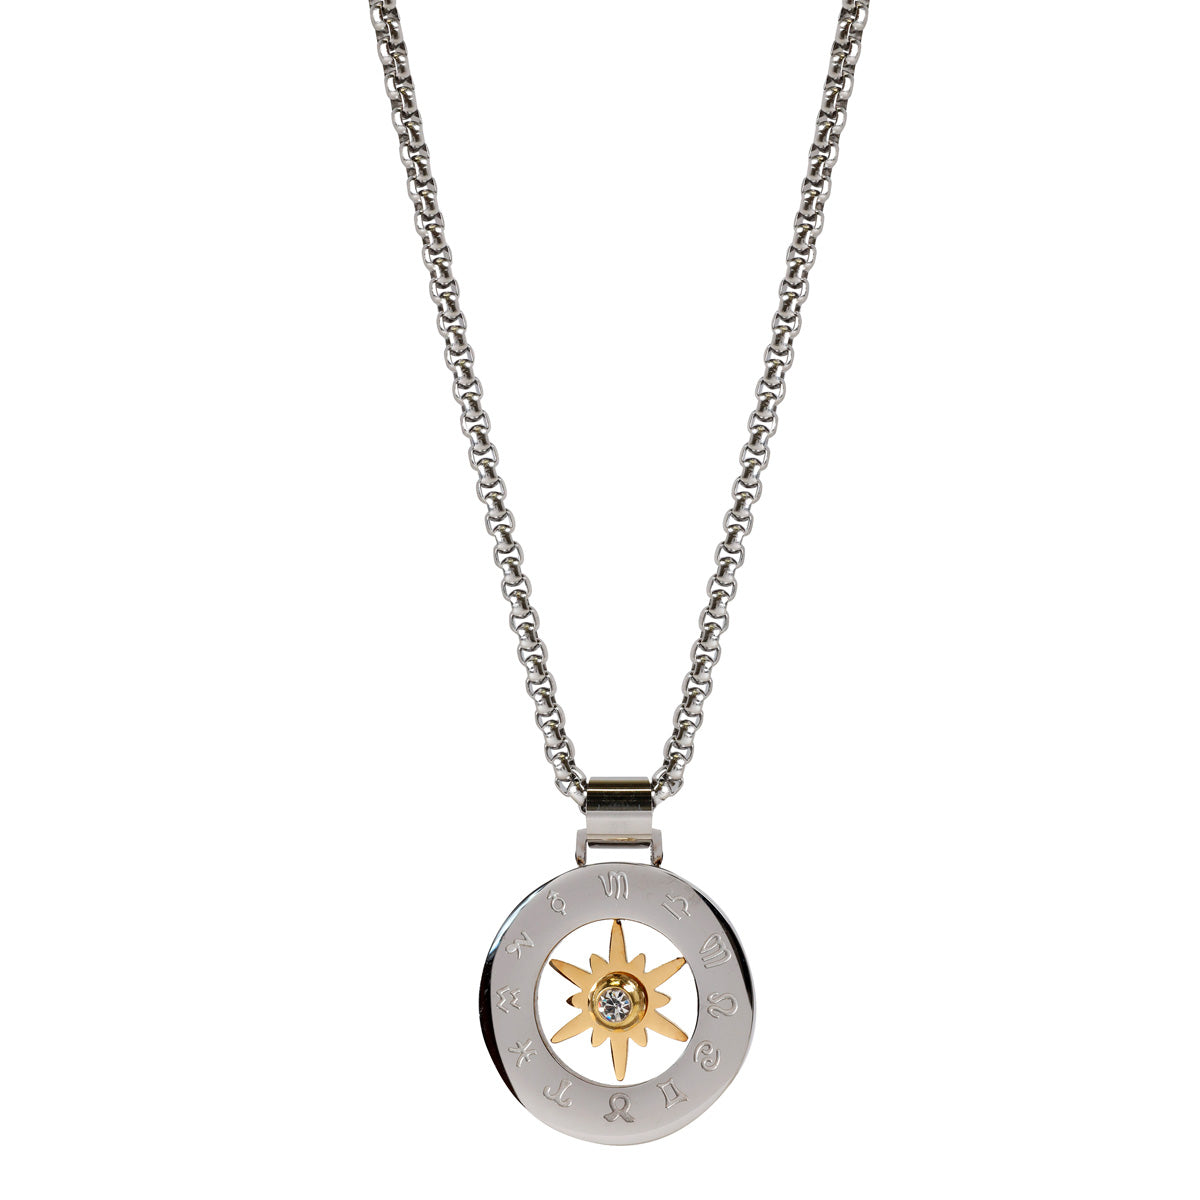 Round steel pendant necklace 60cm